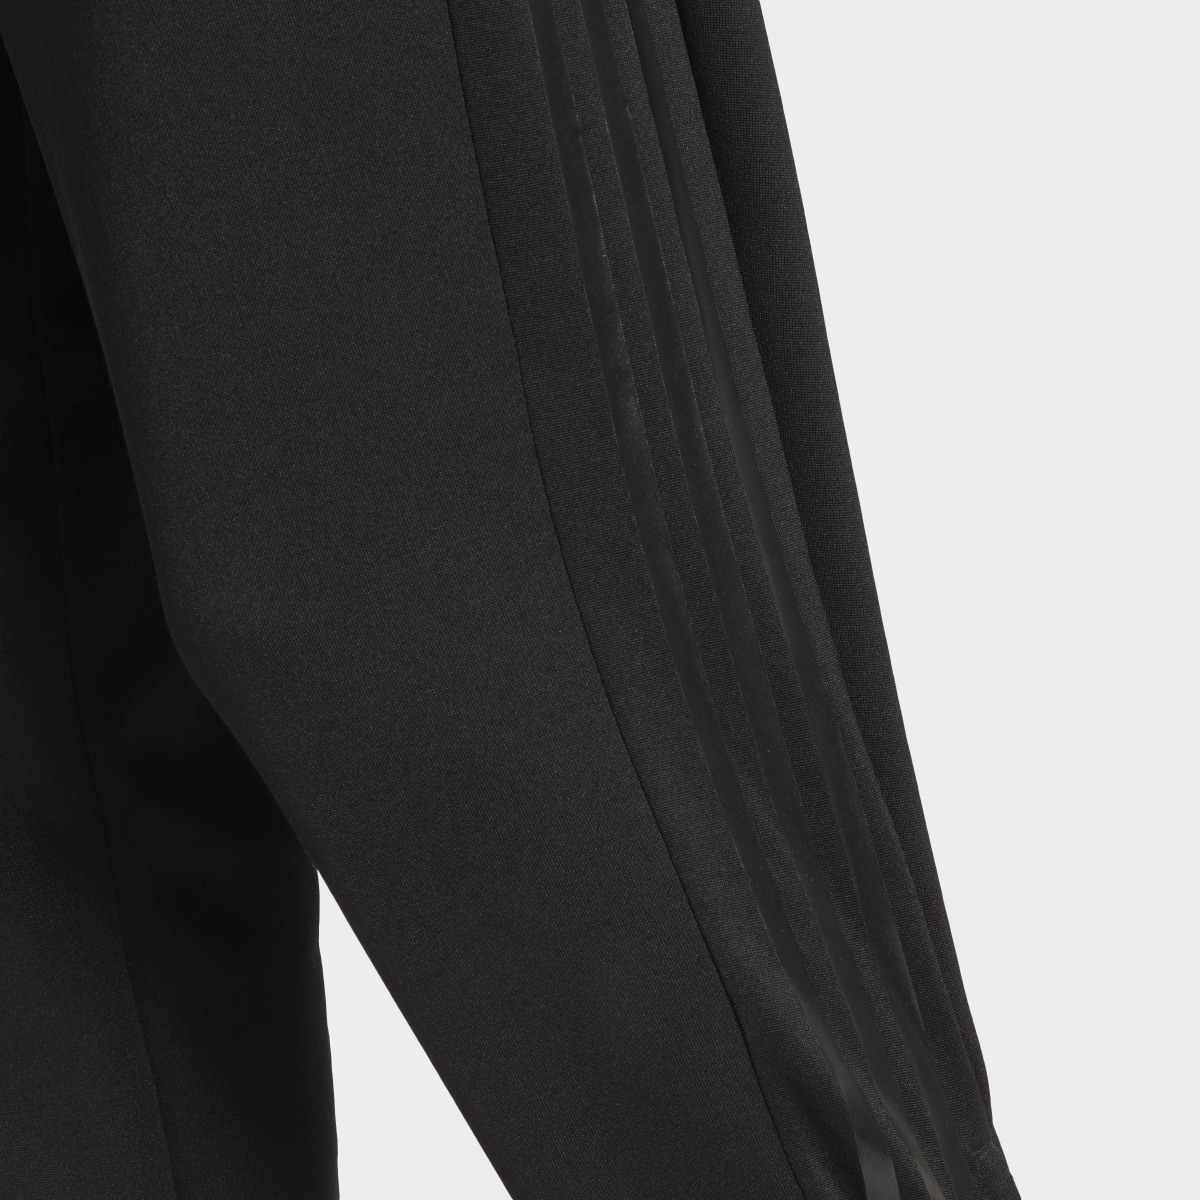 Adidas Pantalón Tiro Suit-Up Advanced. 10